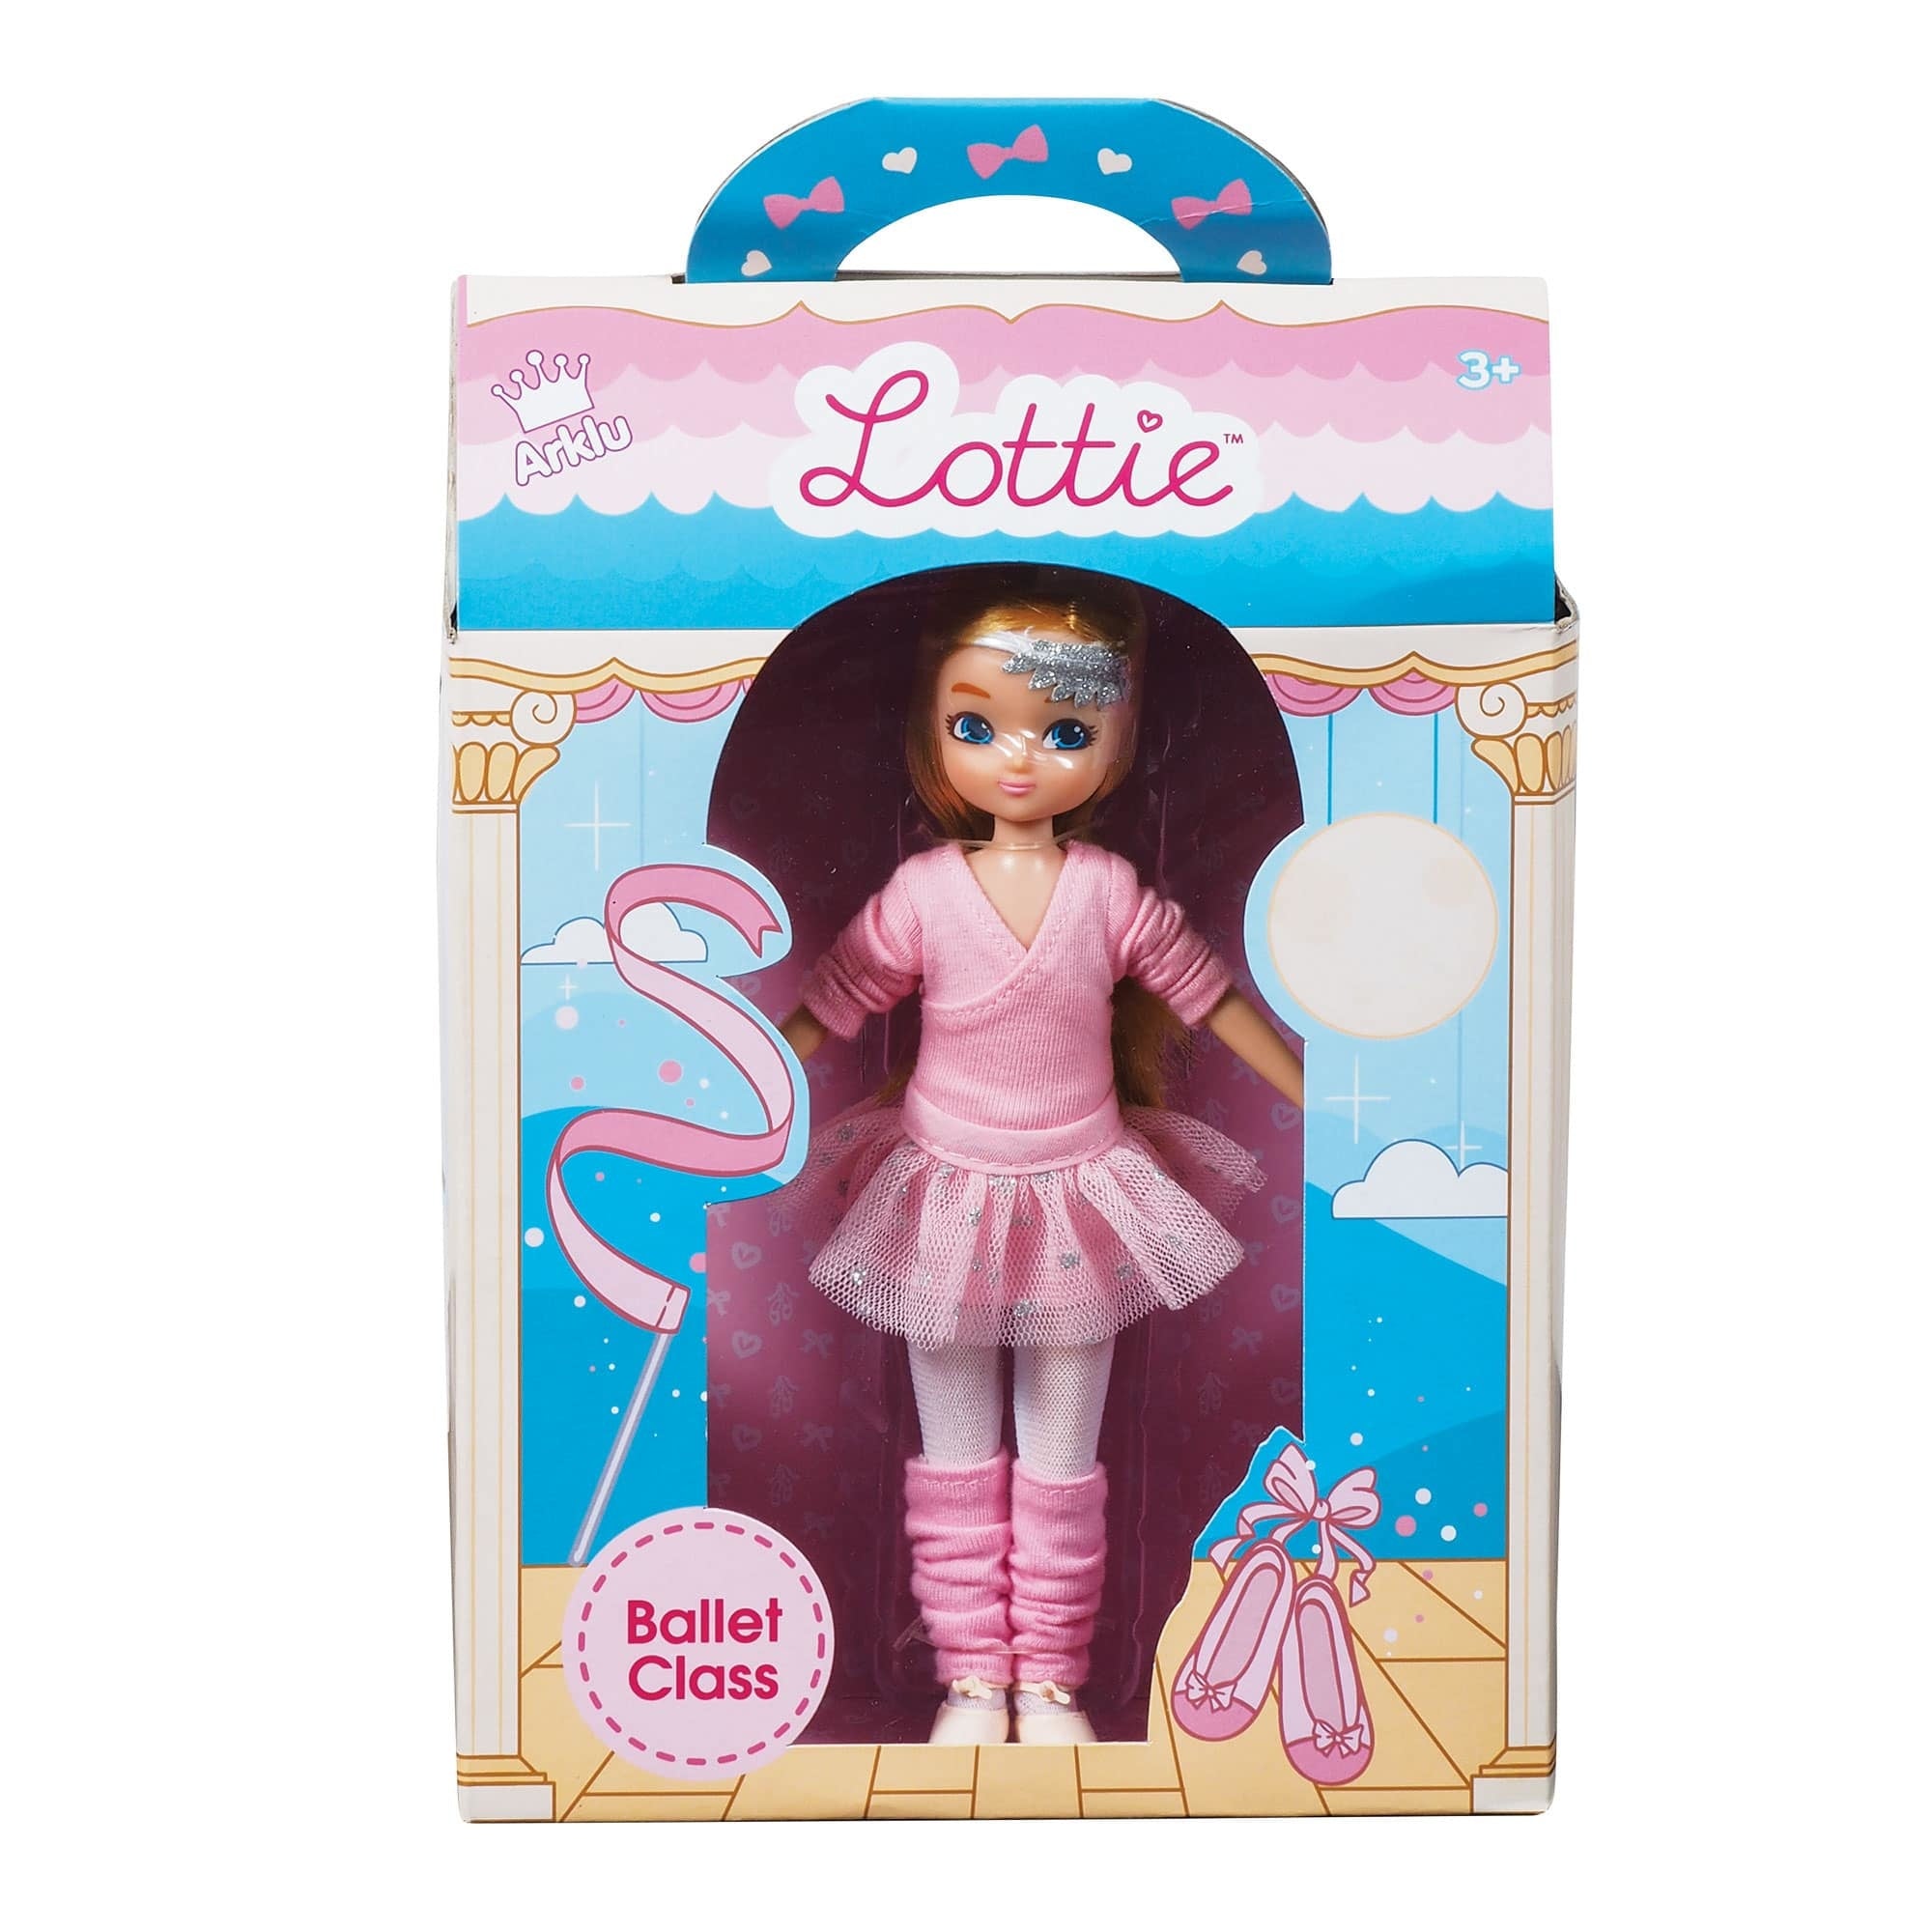 Lottie Doll: Ballet Class